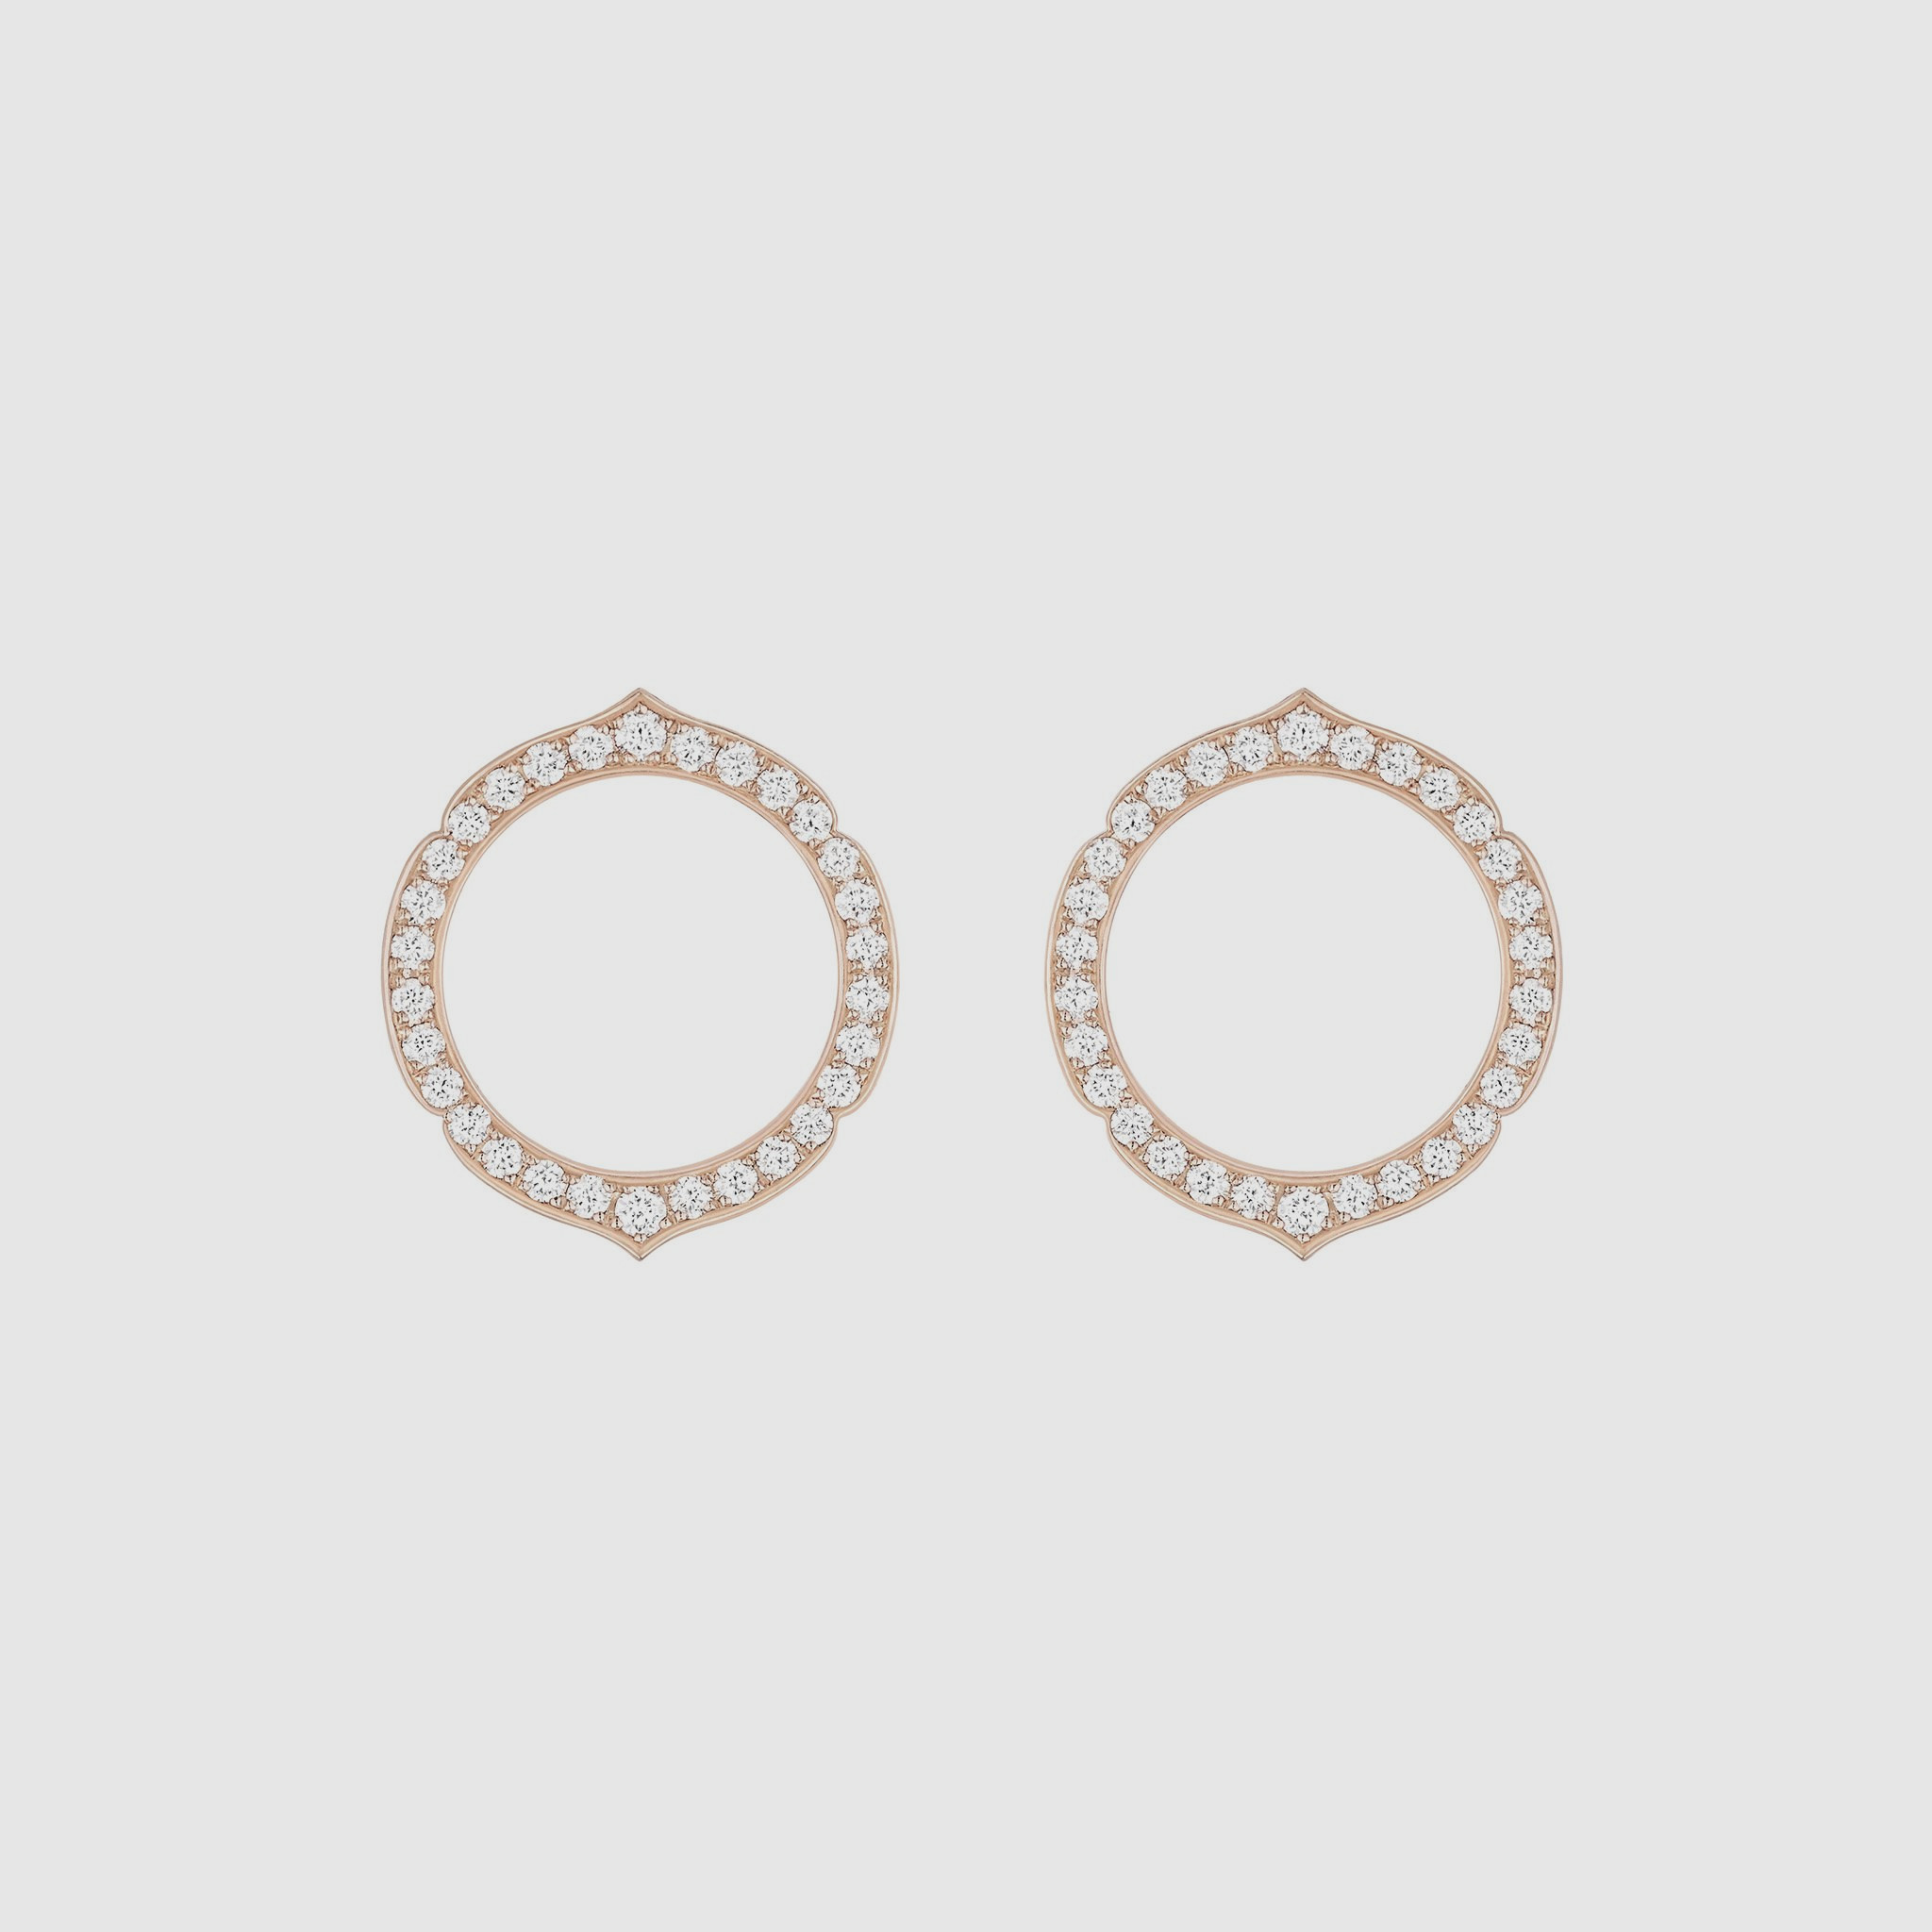 Costco Diamond Earrings
 Diamond Stud Earrings Costco weddings jewelry rings